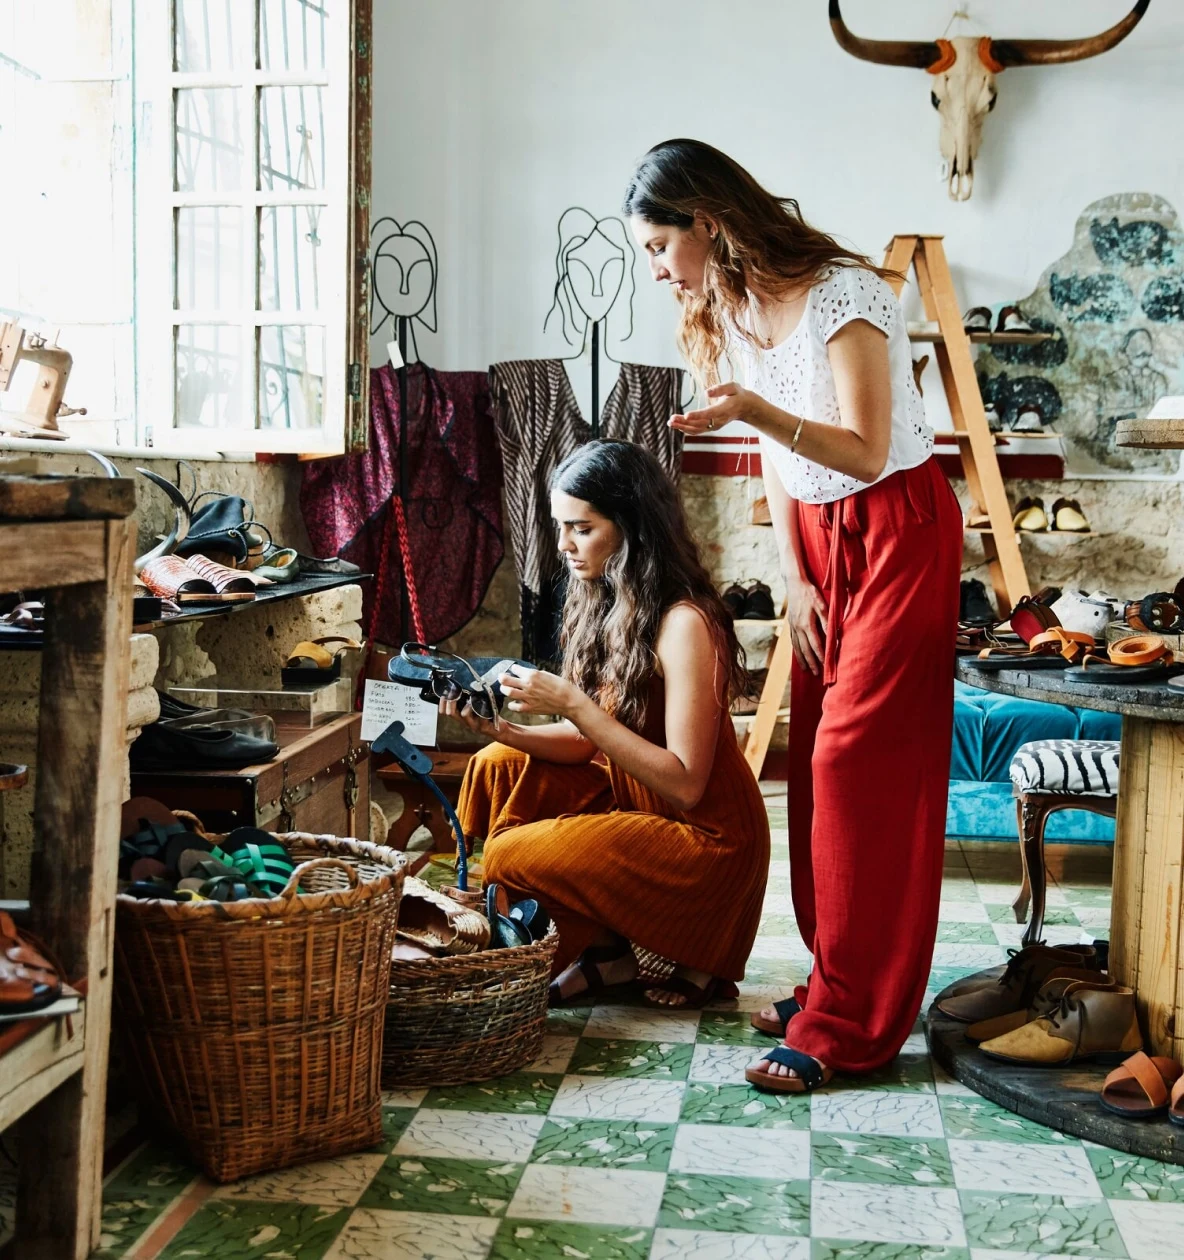 Dos mujeres con cabello largo y oscuro examinan un par de sandalias en una tienda de ropa